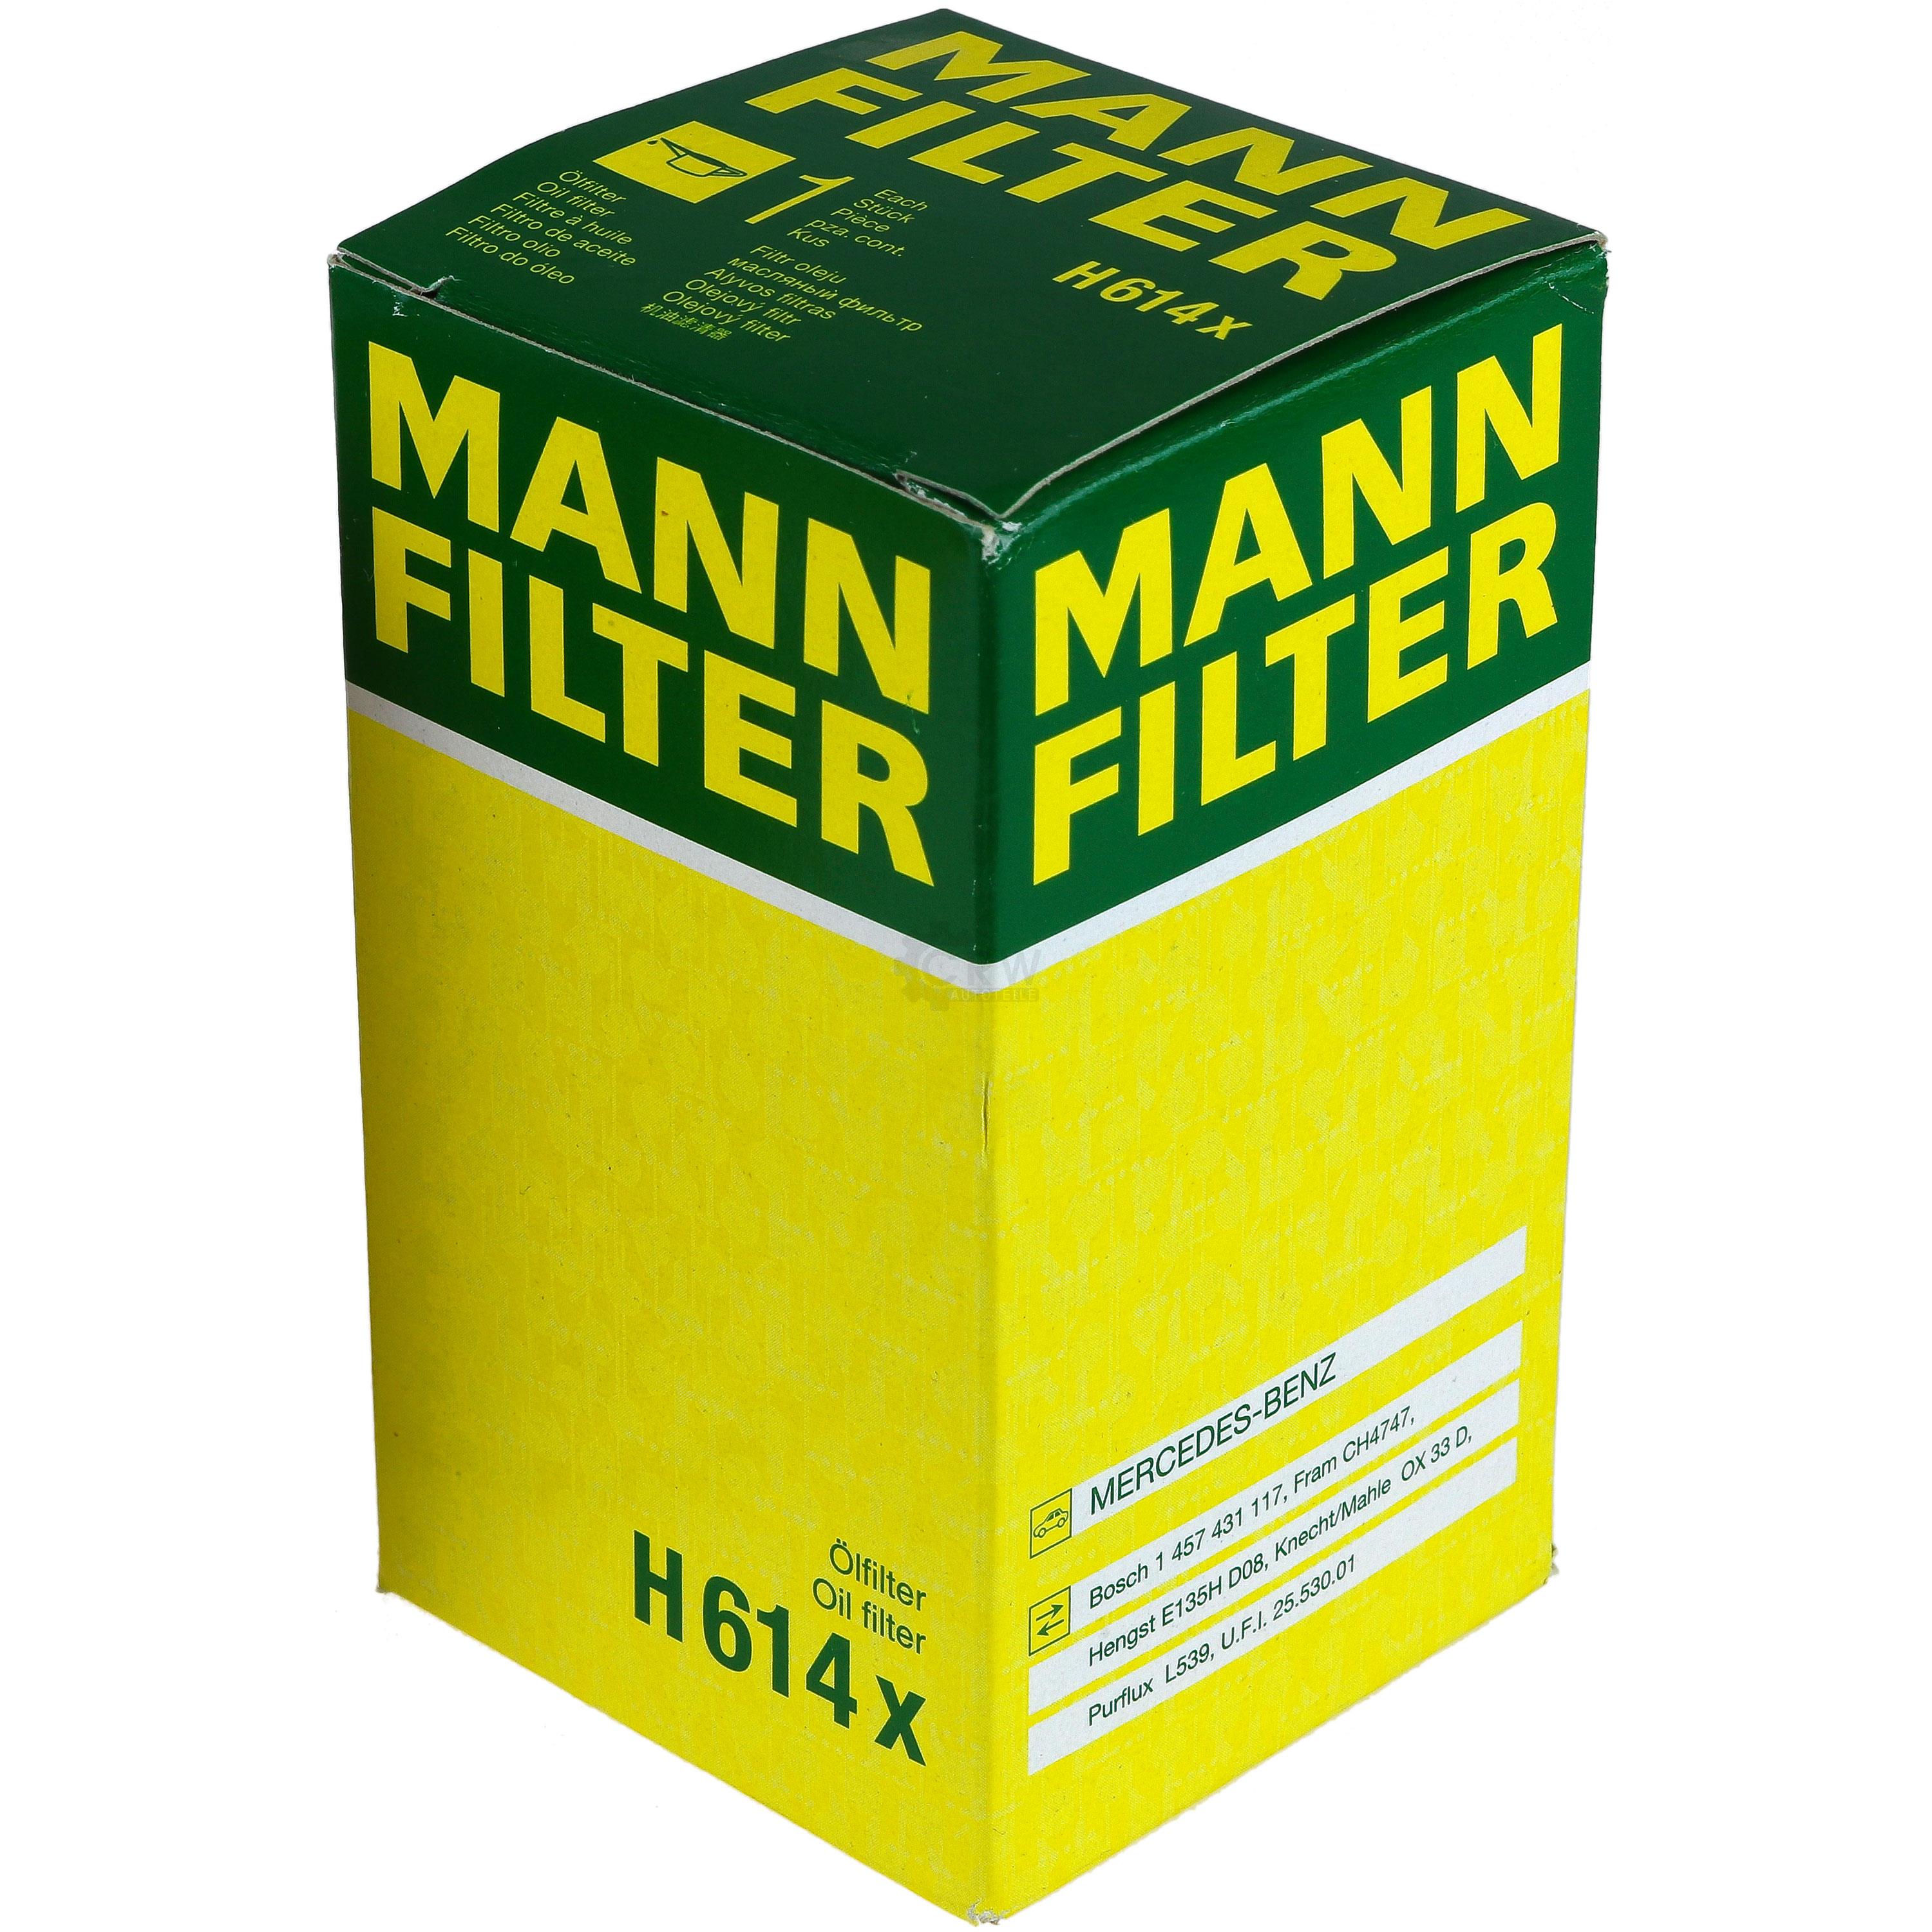 MANN-FILTER Ölfilter Oelfilter H 614 x Oil Filter